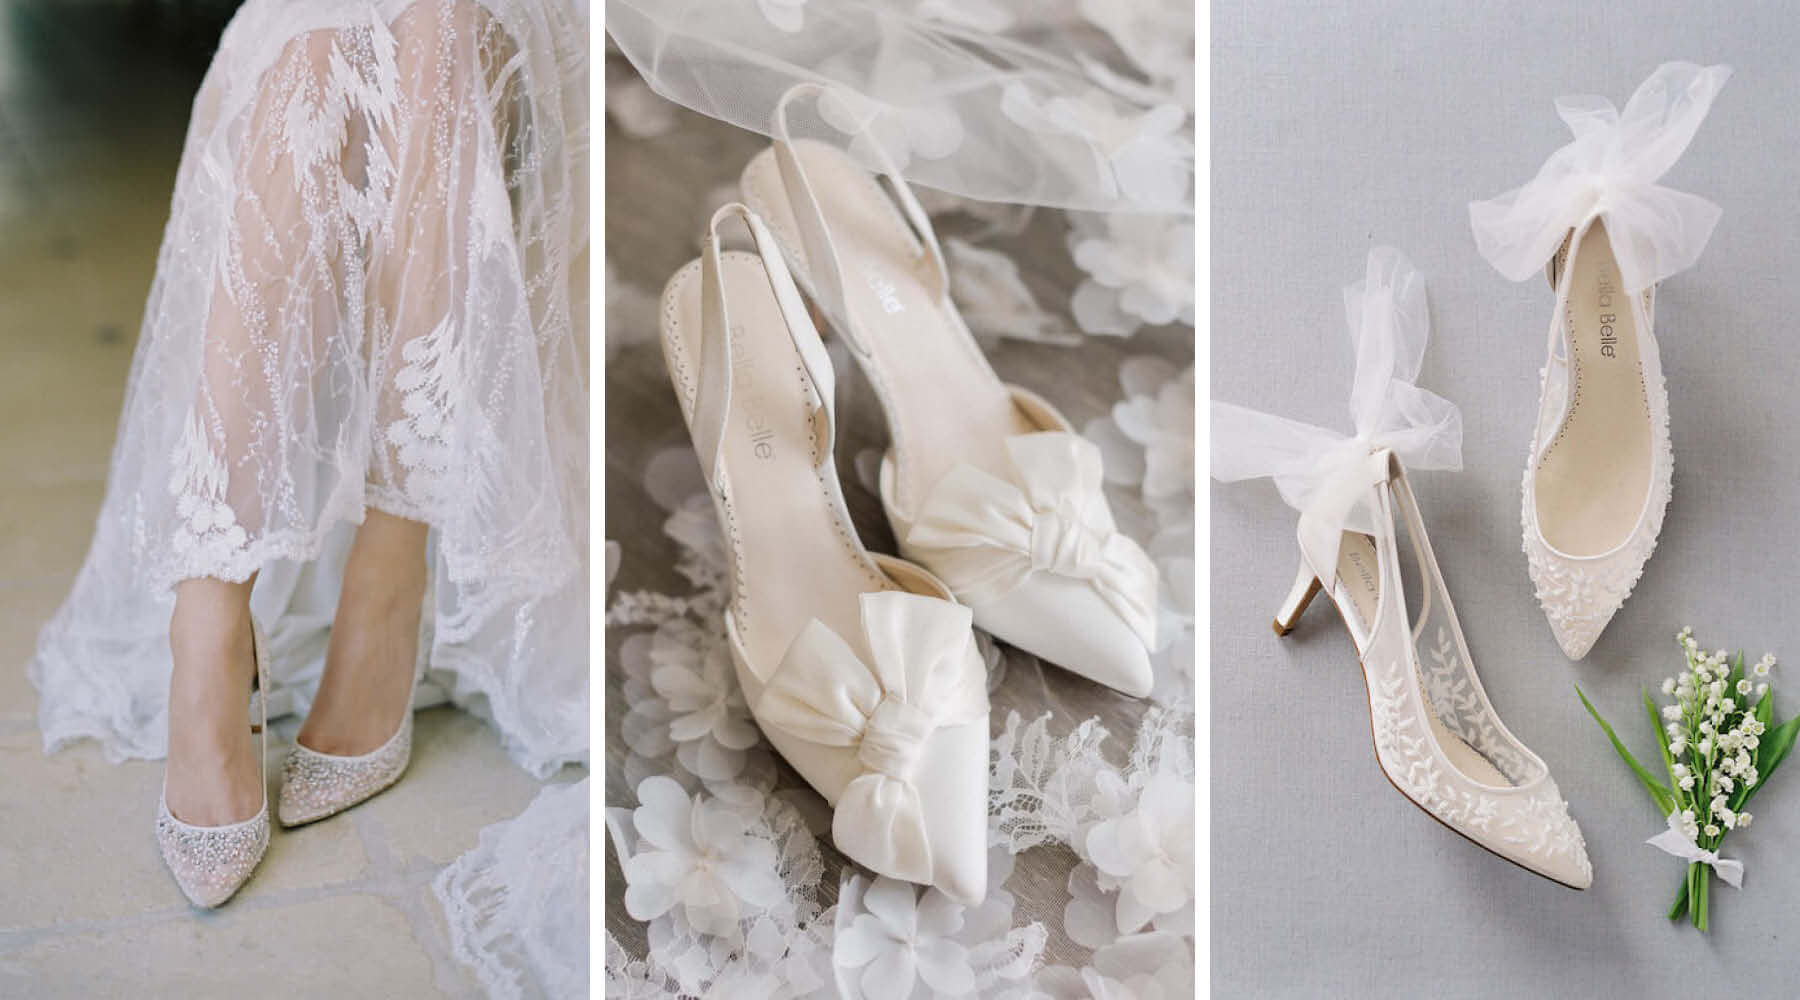 Women's Transparent Heels, Glass Wedding Dress Shoes